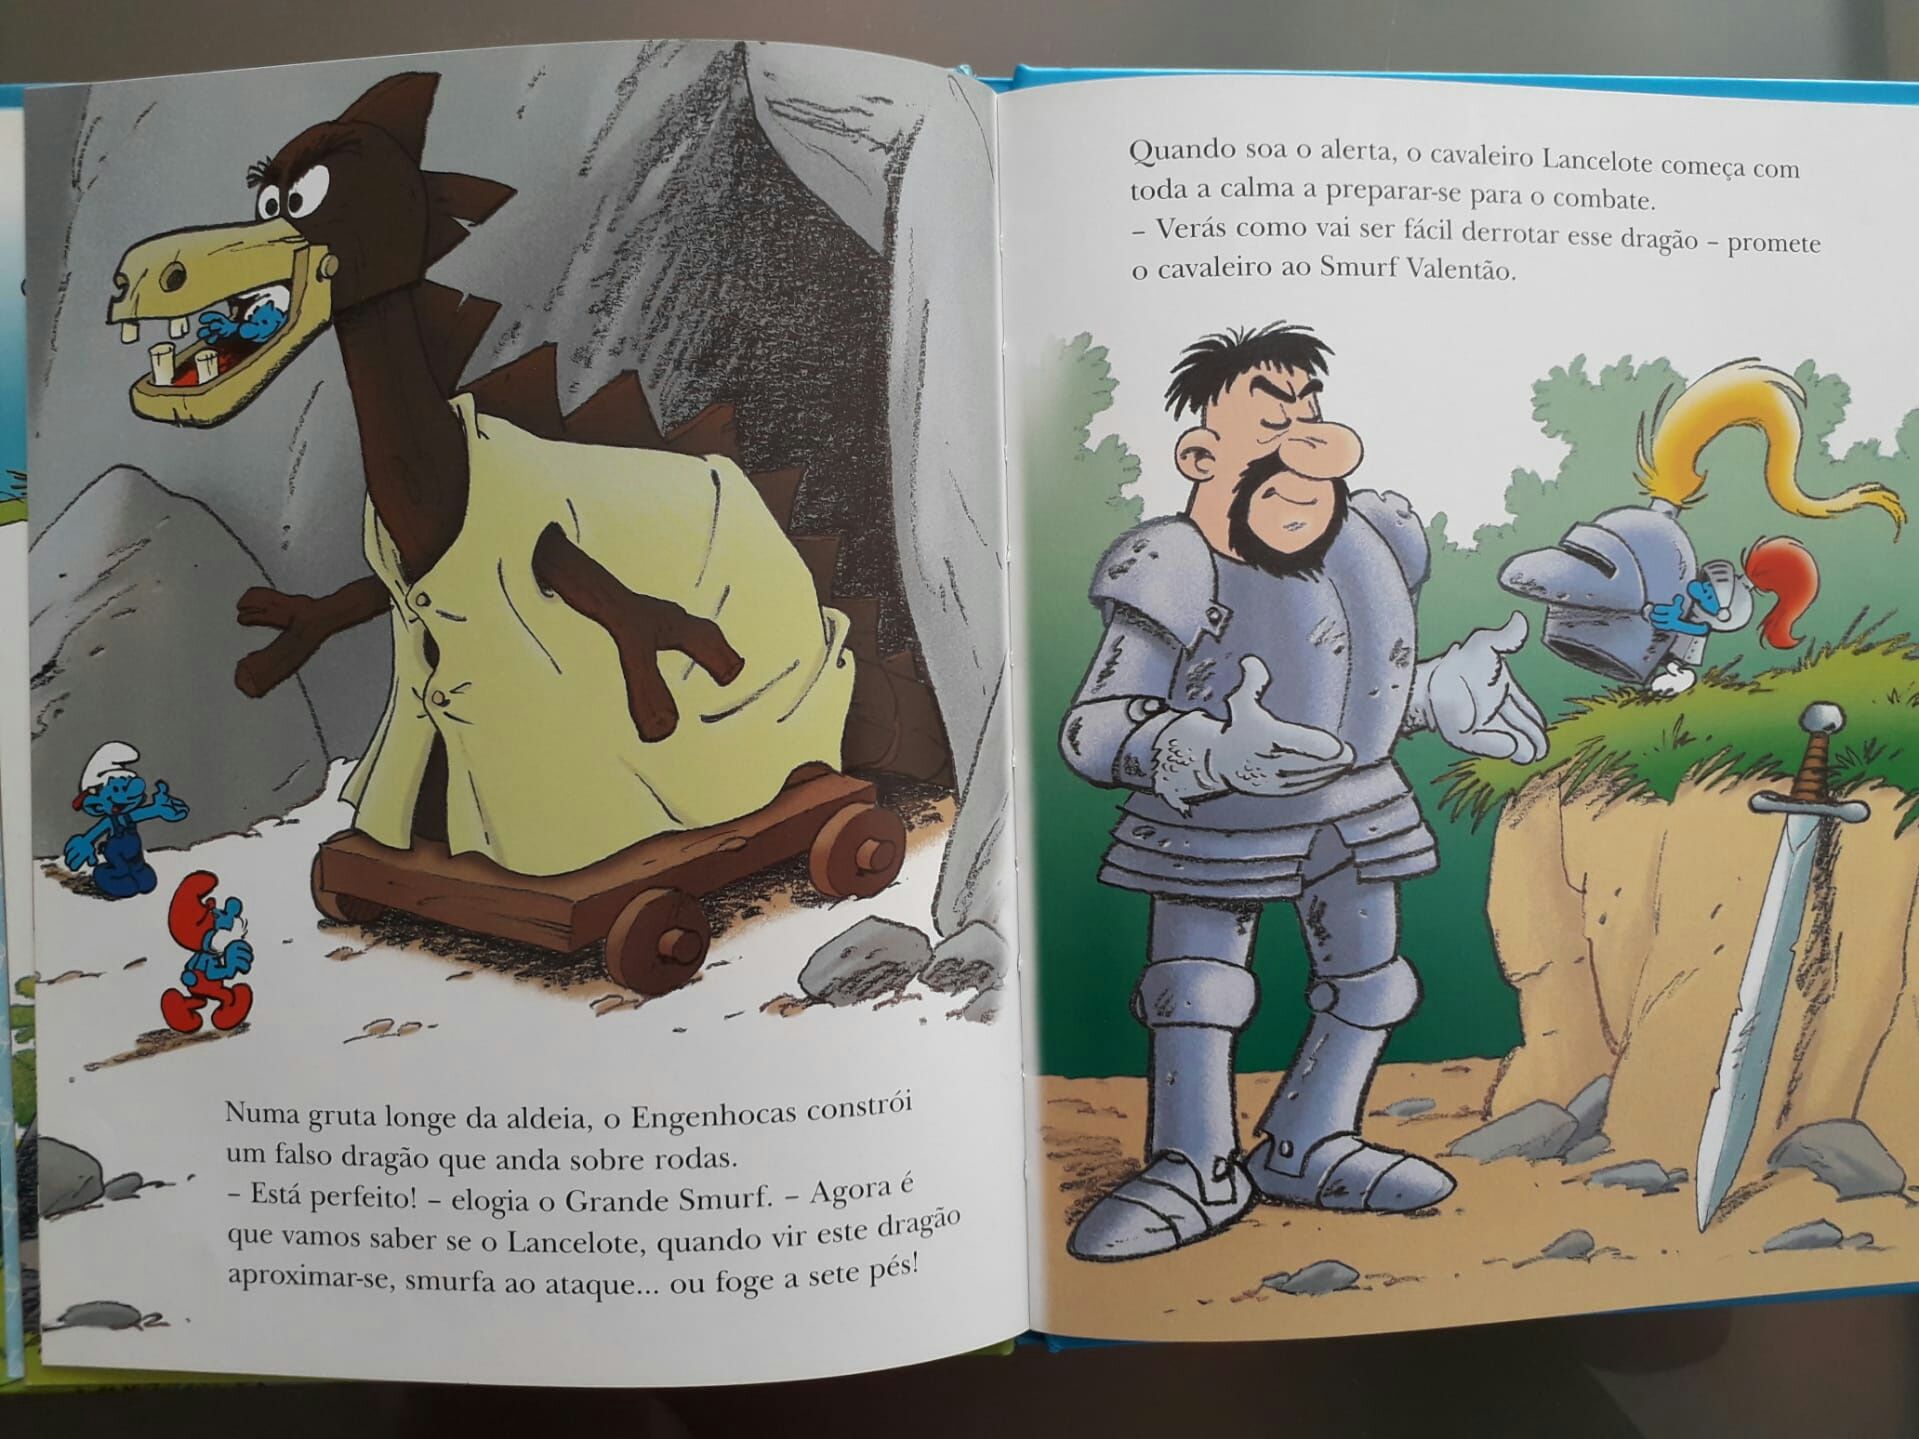 Livro " O Smurf Cavaleiro "